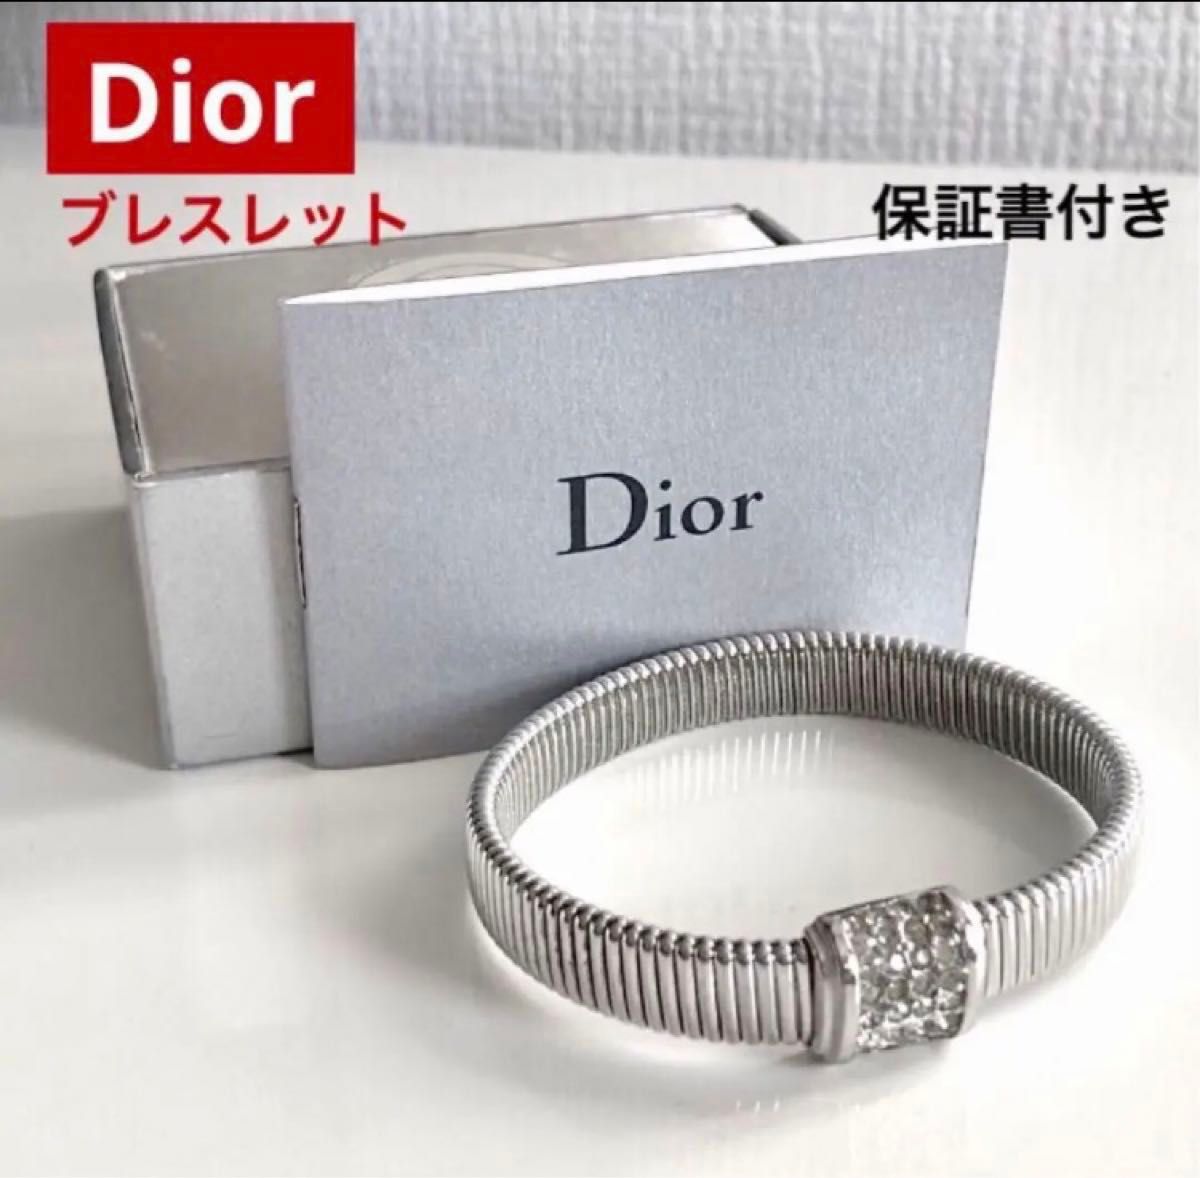 ☆ 保証書付 Dior/ディオール 金属バンド/ラインストーン ブレスレット